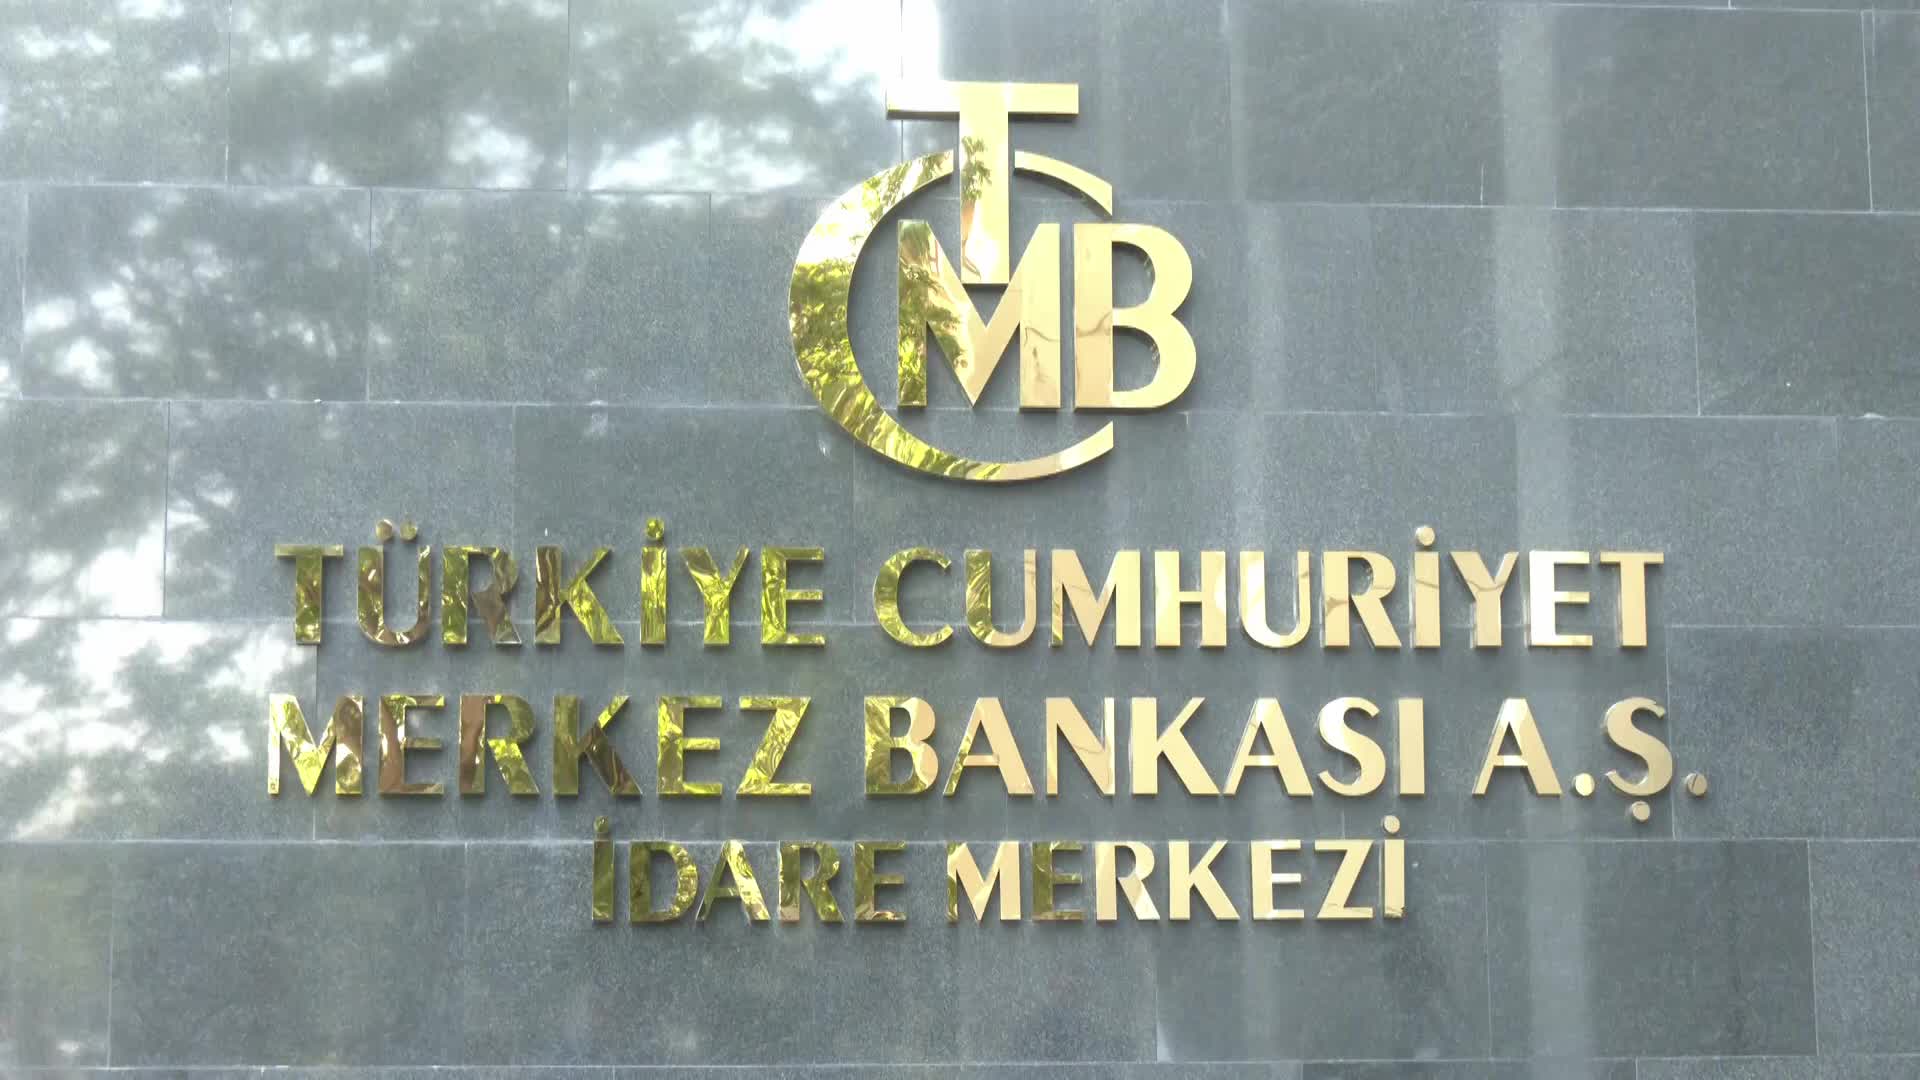 Vatandaş, Merkez Bankası'nın rekor zararını yorumladı: İçini boşaltmışlar